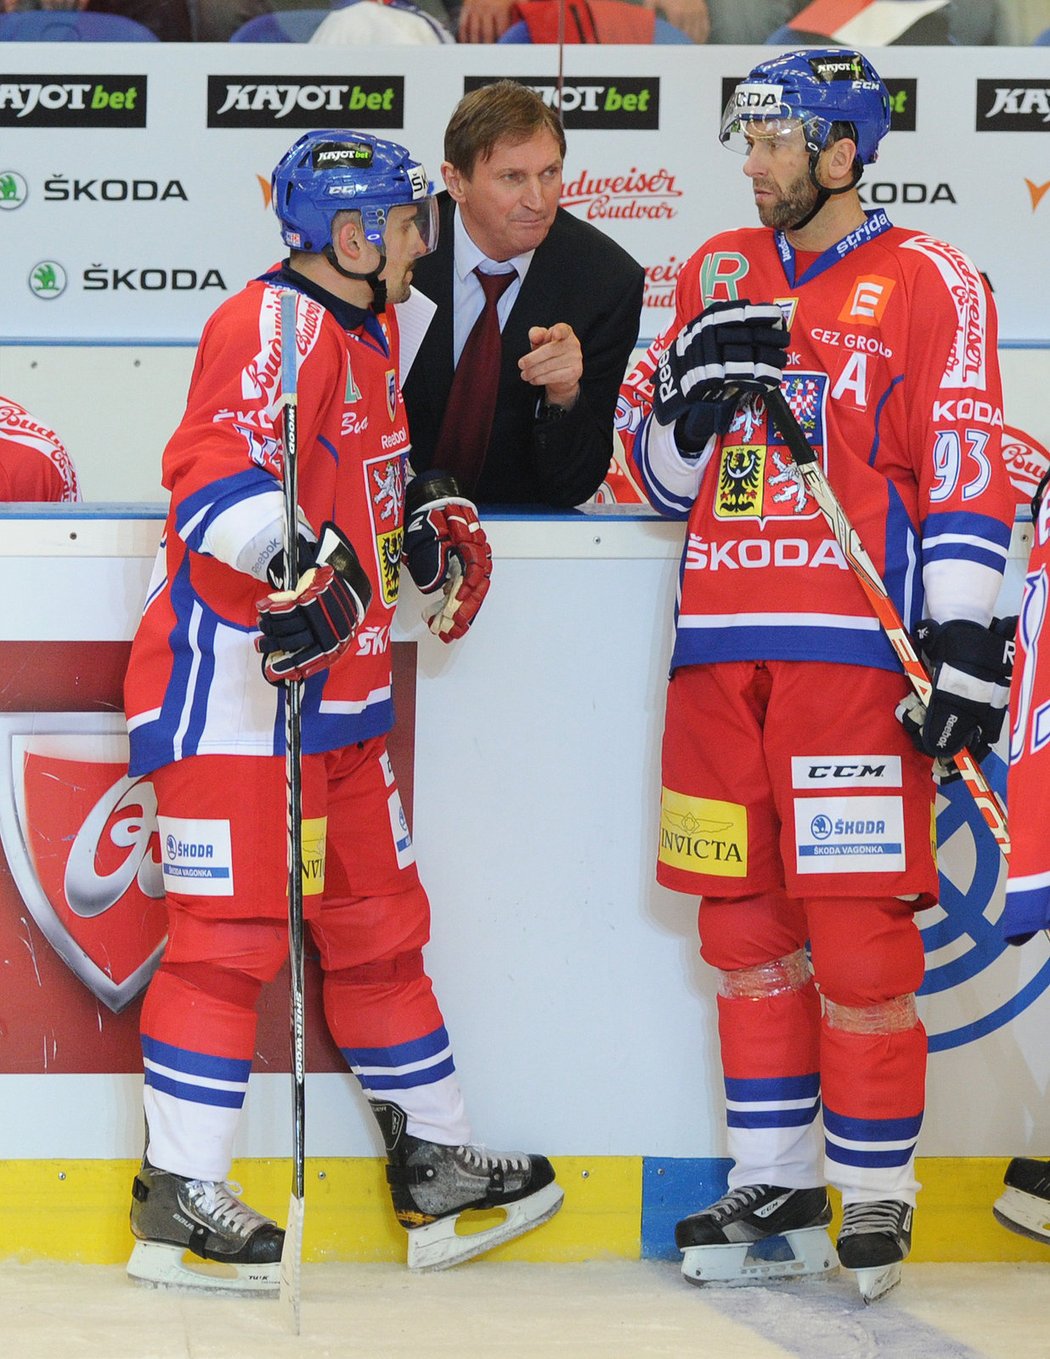 Opory v diskuzi s trenérem. Alois Hadamczik debatuje s Petrem Nedvědem (vpravo) a Tomášem Plekancem